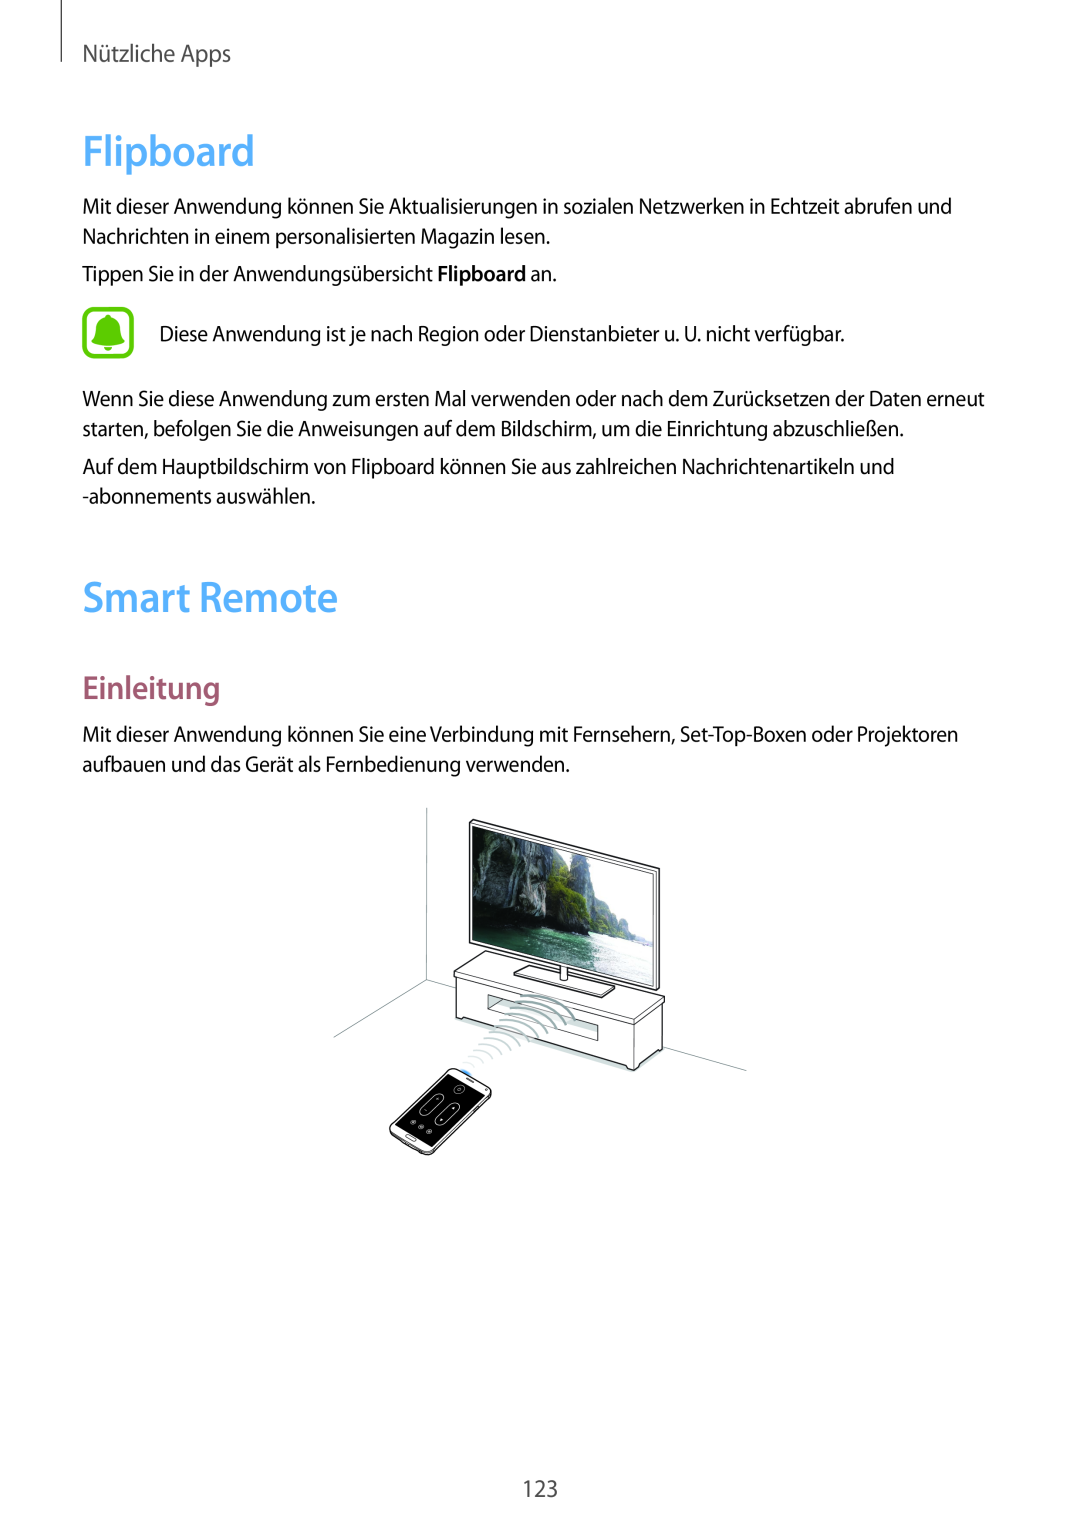 Samsung SM-N910FZKEMEO, SM-N910FZWEEUR, SM-N910FZWEDRE, SM-N910FZWECOS Flipboard, Smart Remote, Einleitung, Nützliche Apps 